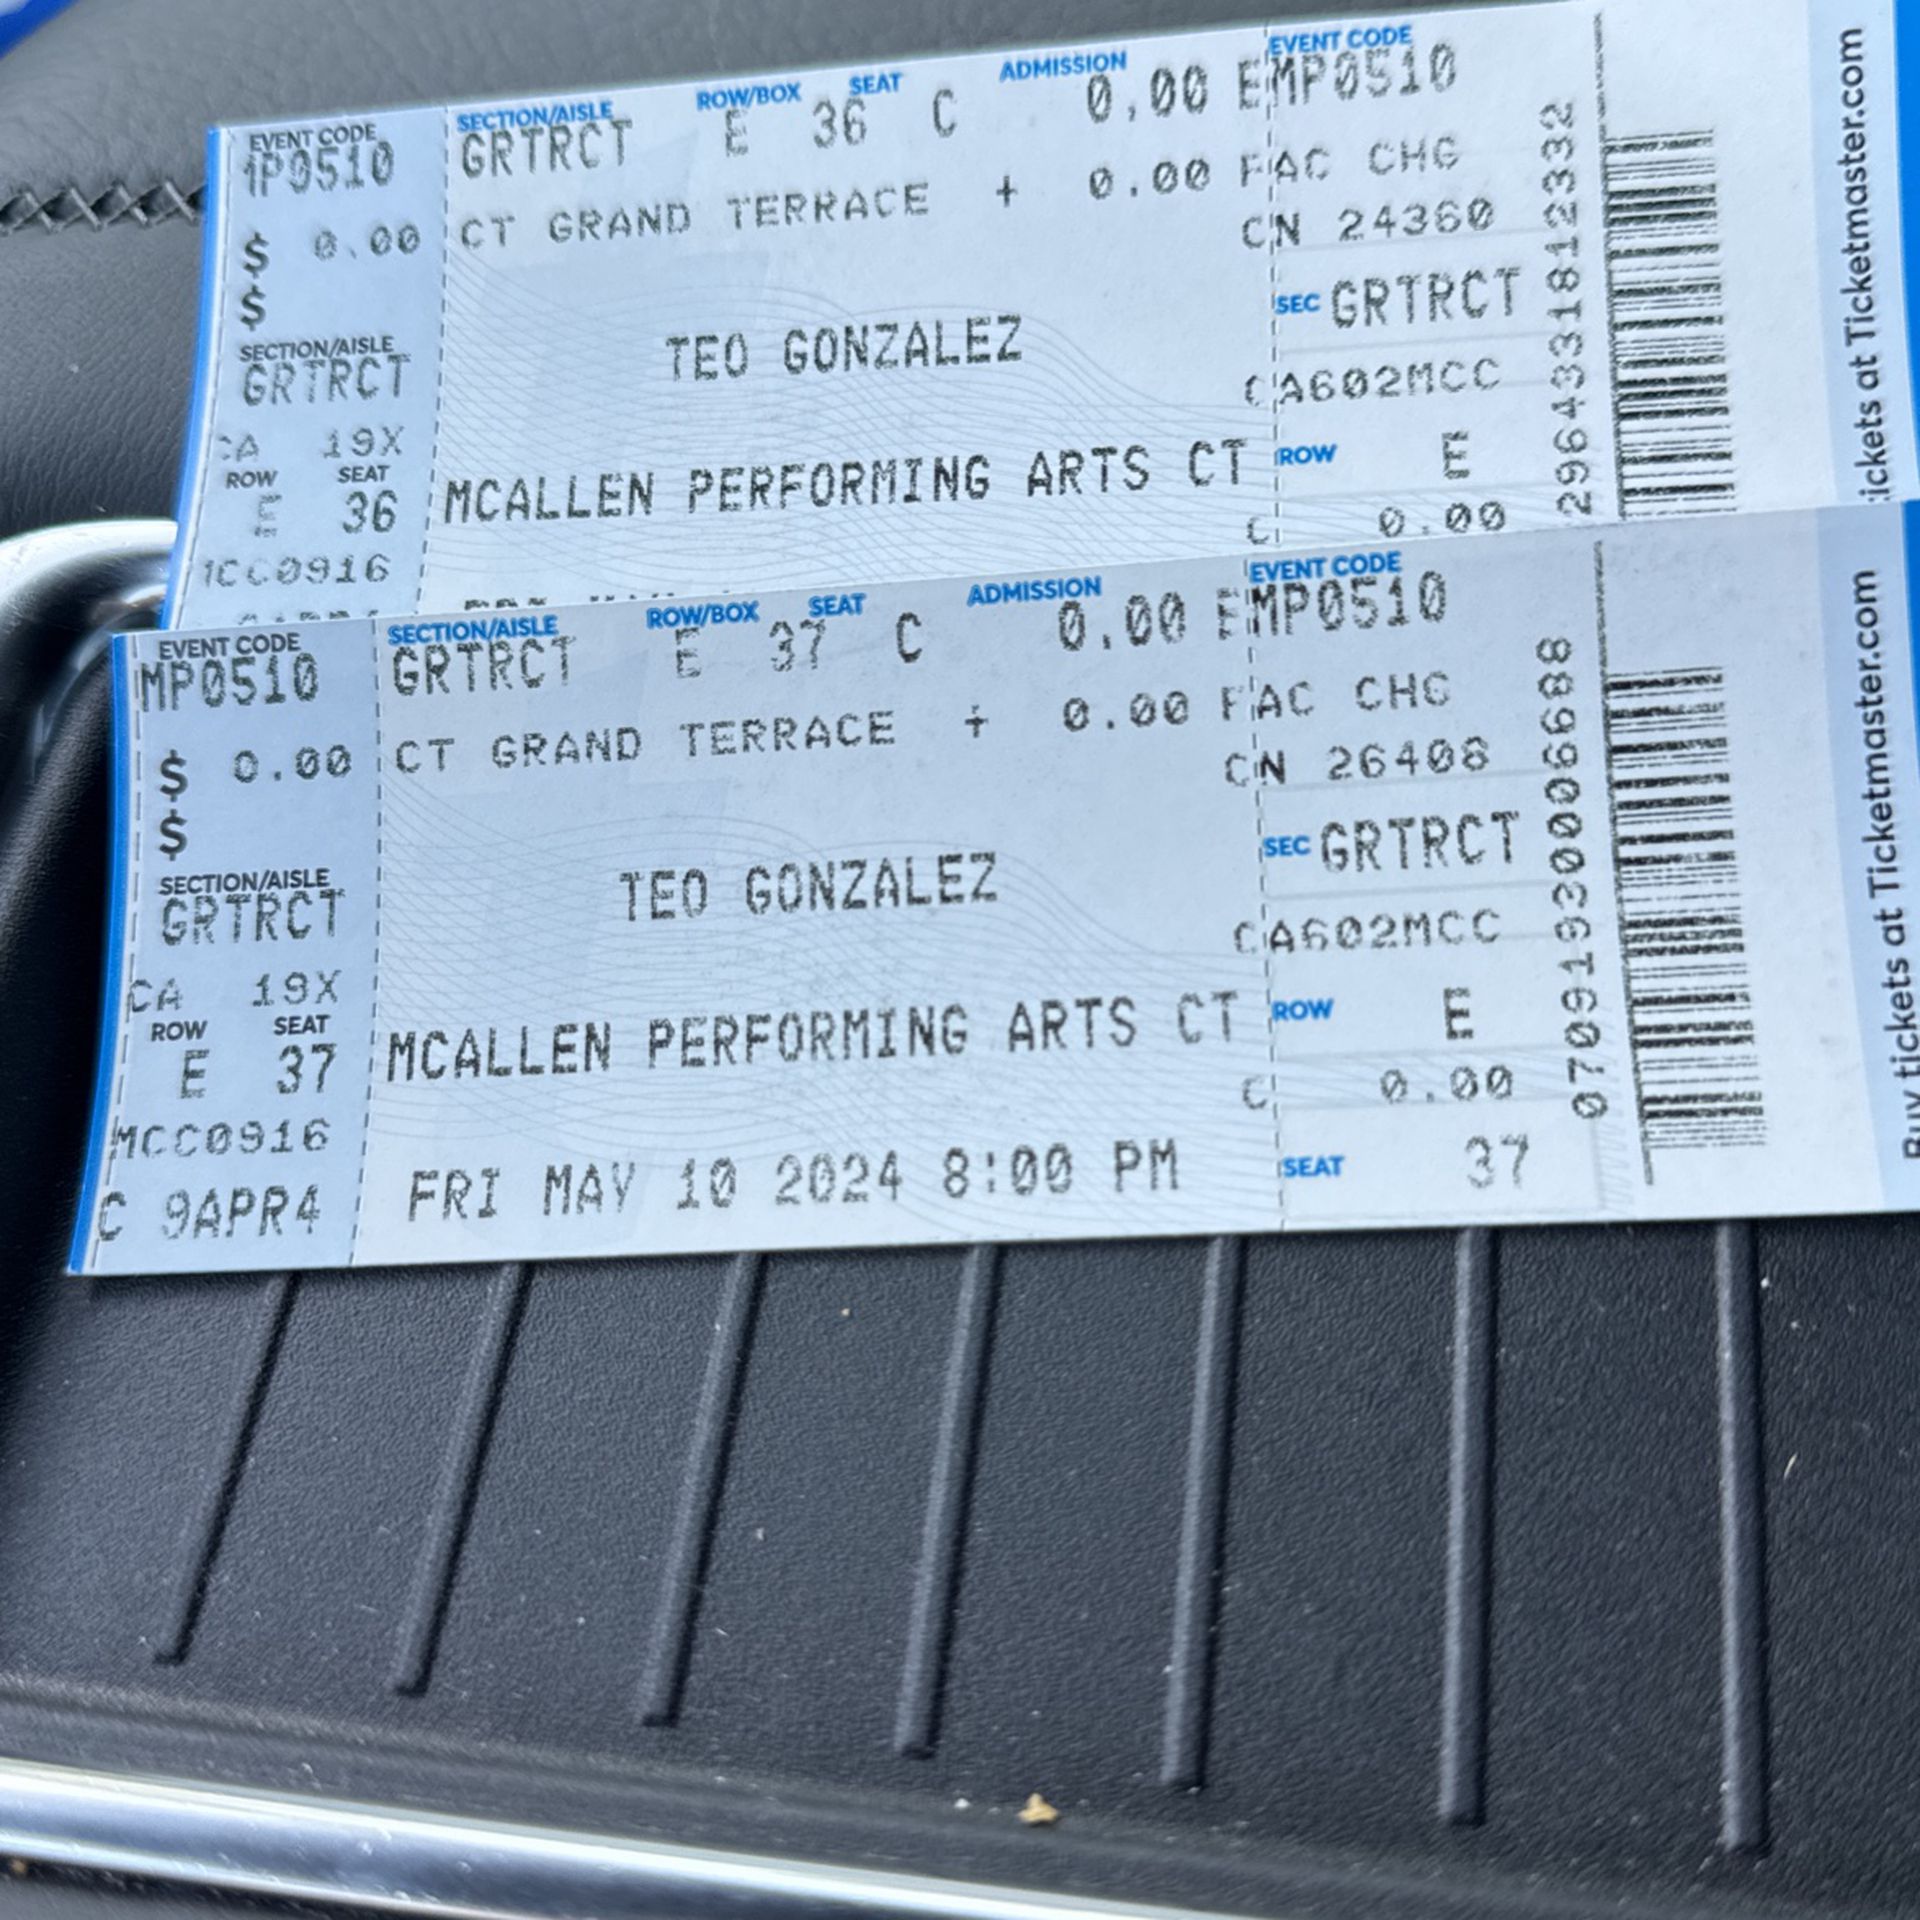 Comediante Teo Gonzales Tickets $40